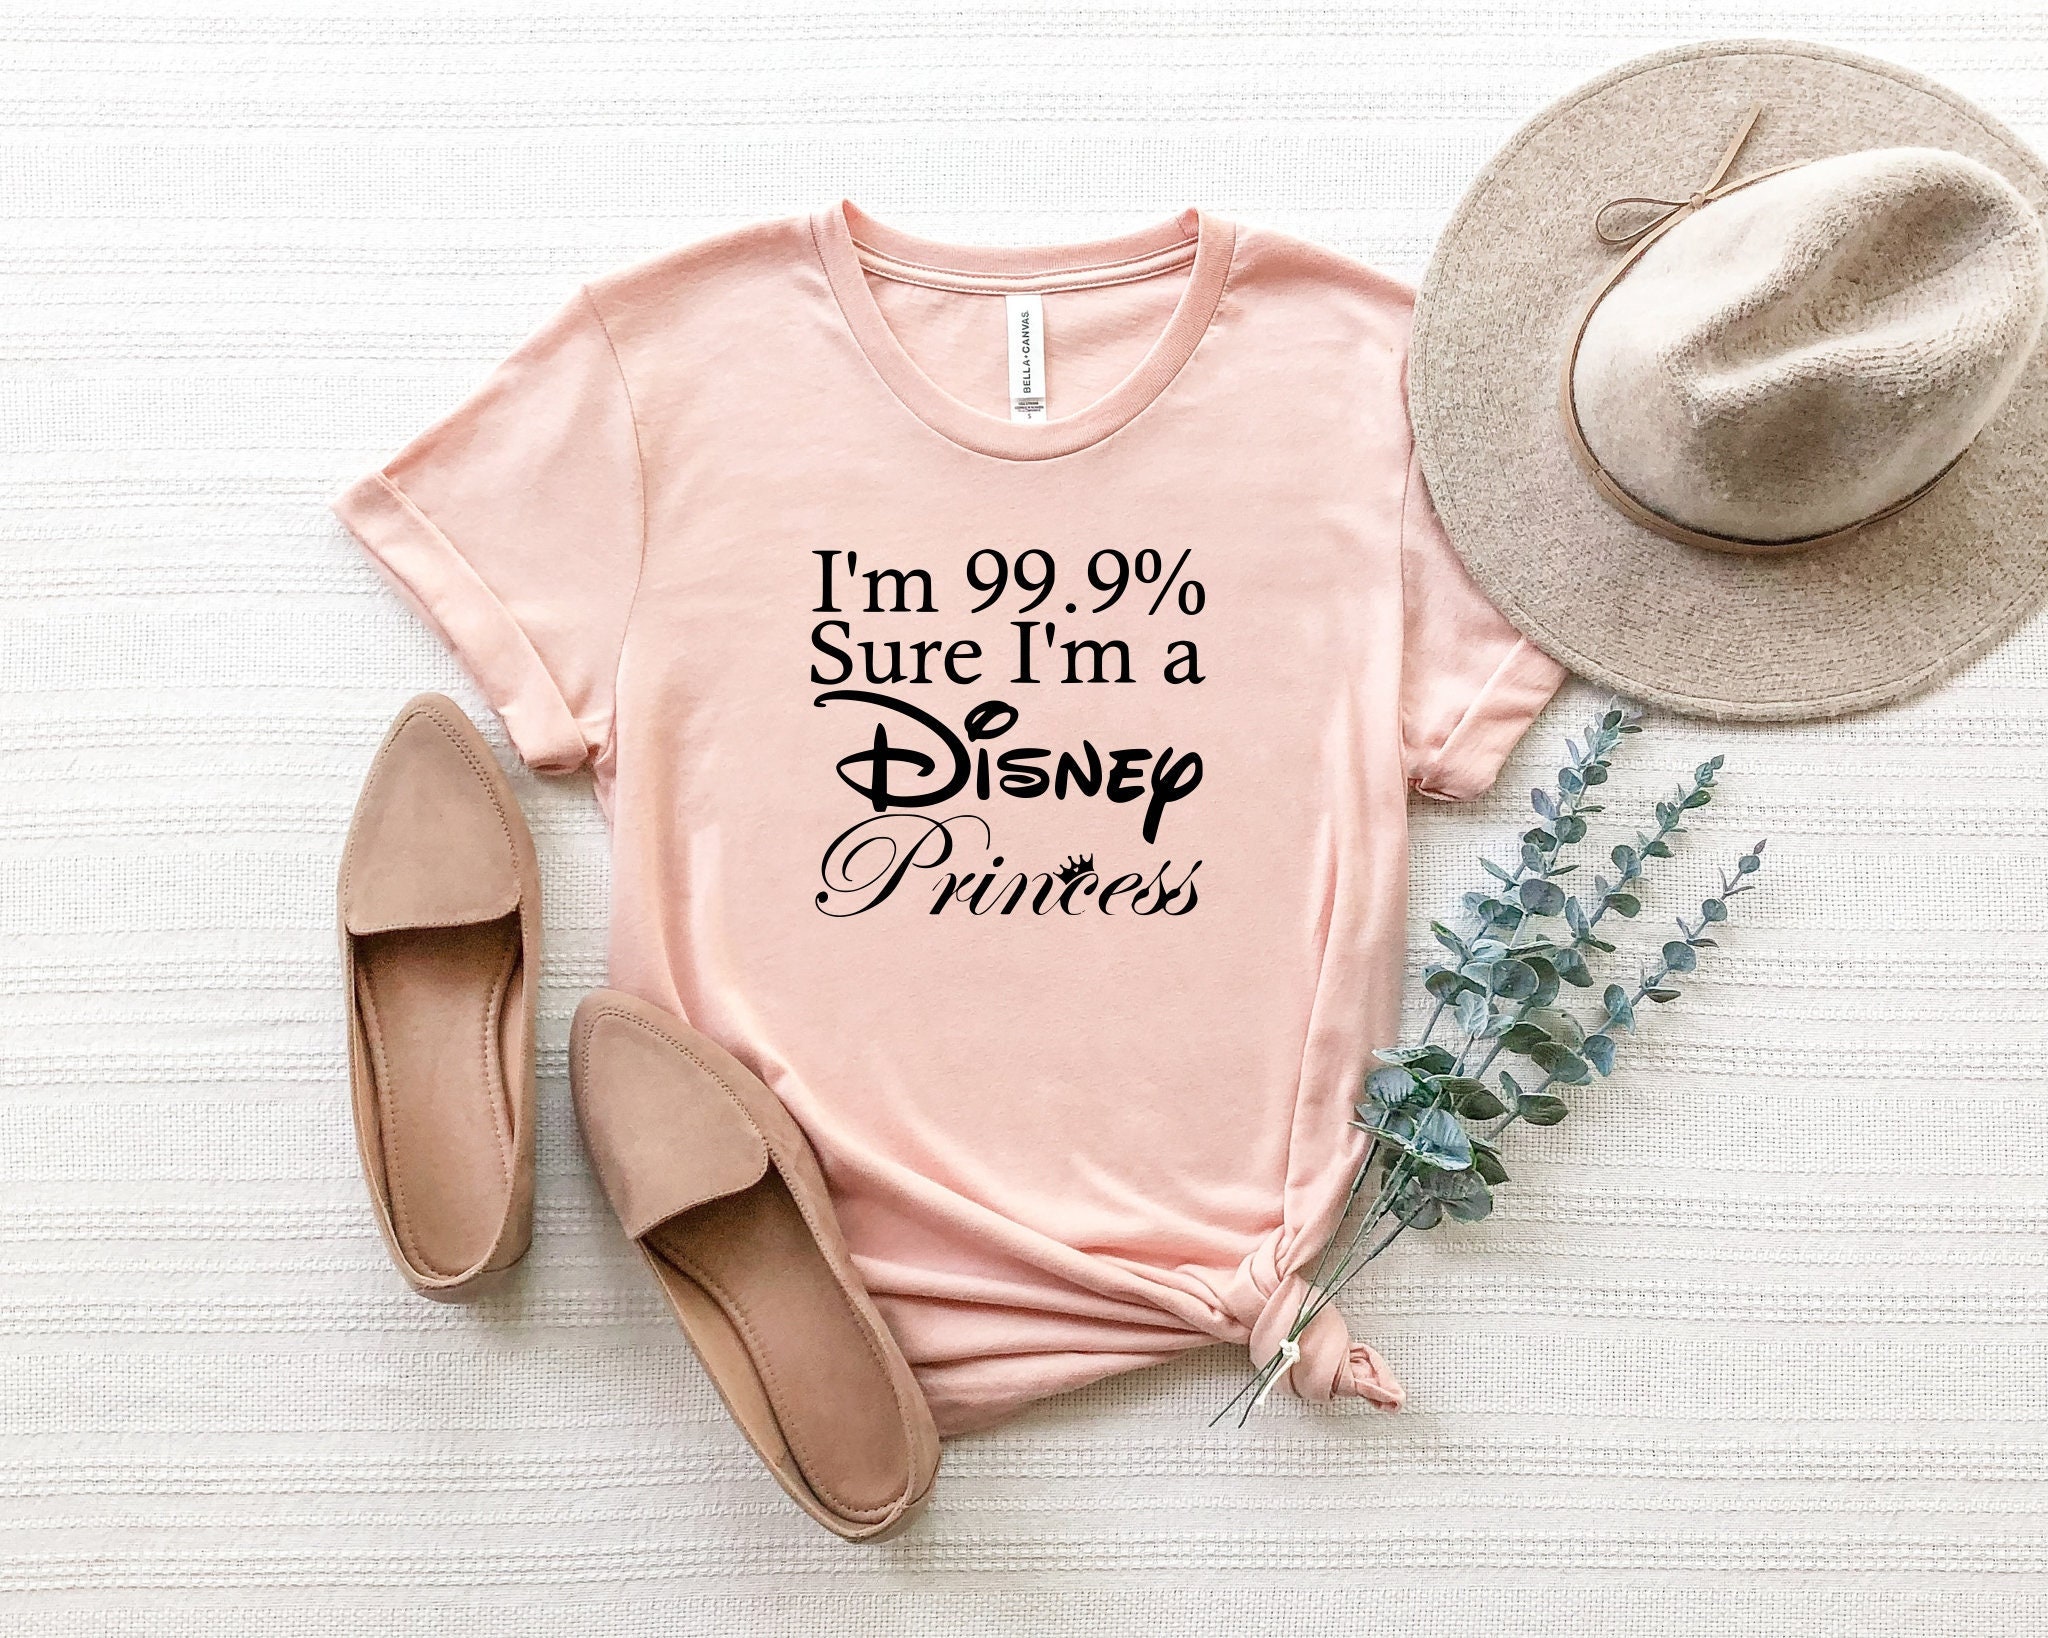 Discover I'm 99.9% sure I'm a Disney Princess Shirt, Disney Trip T-Shirt